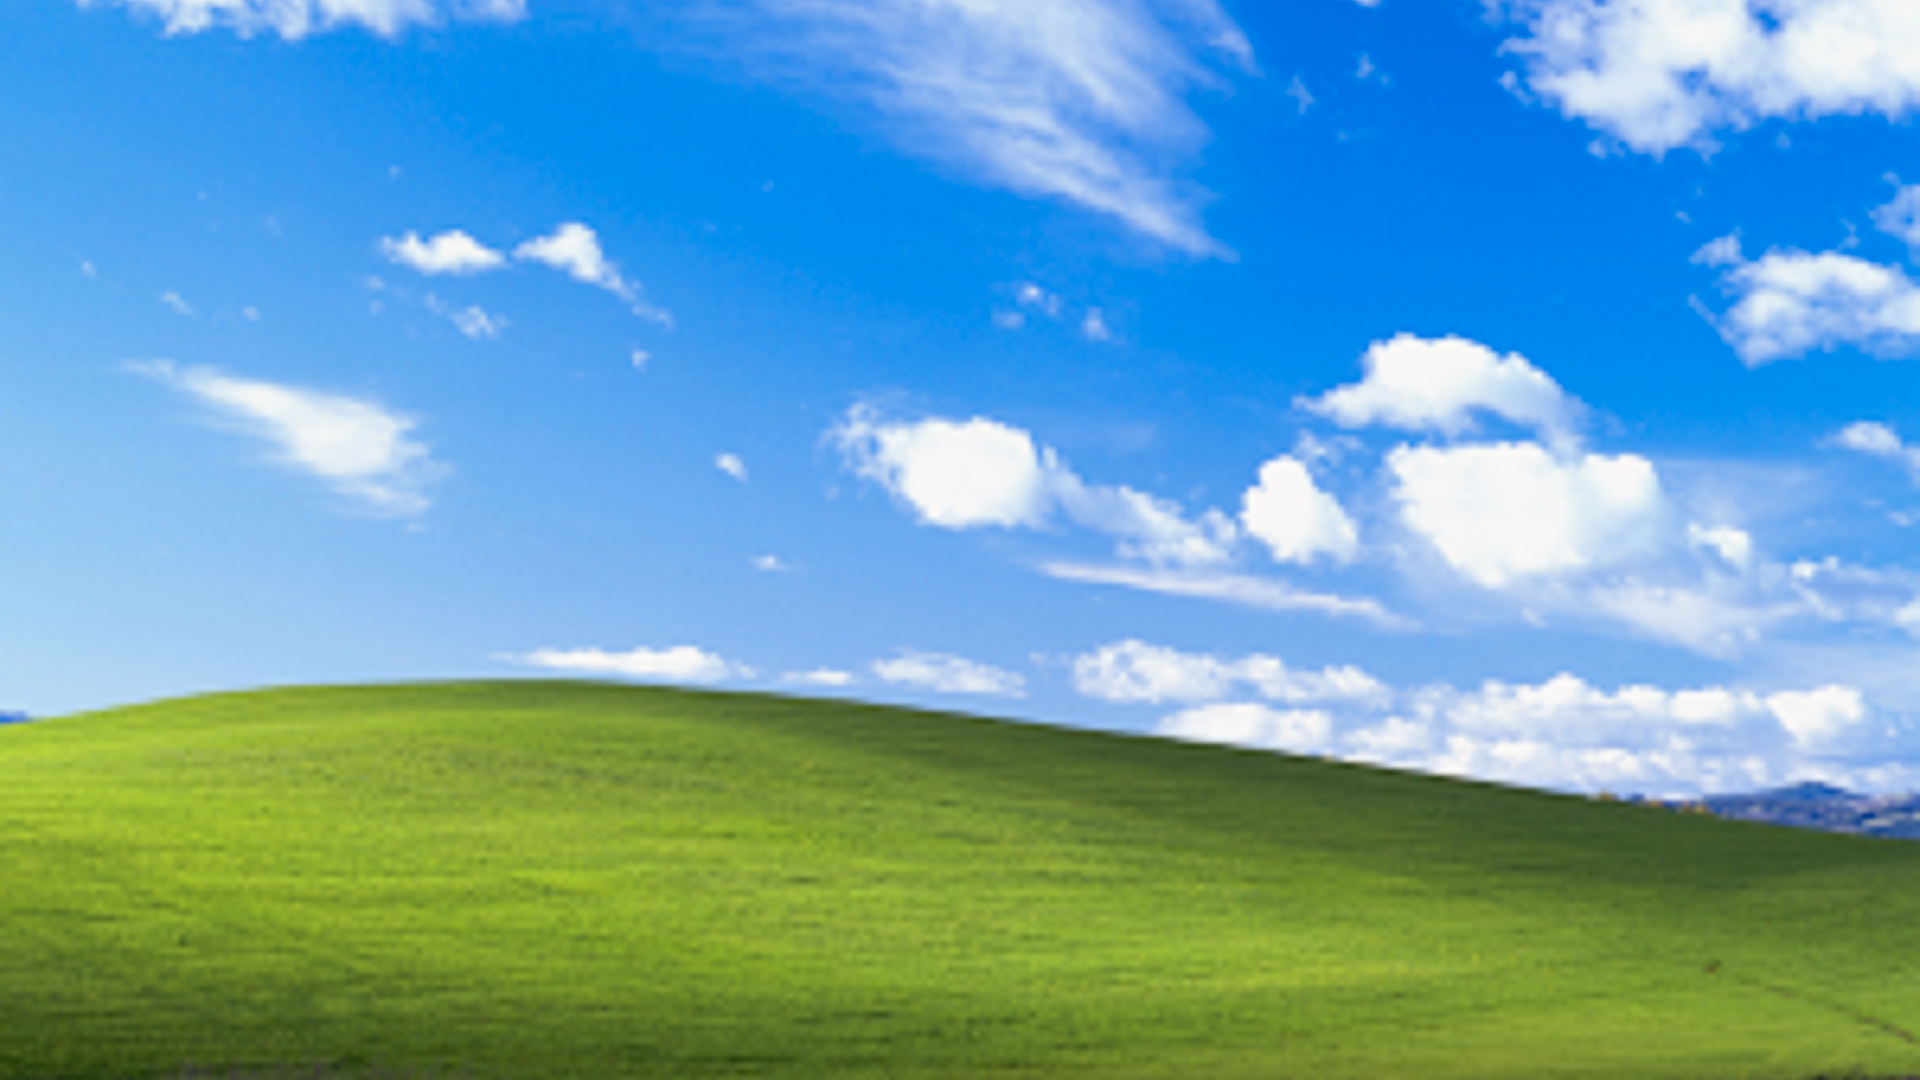  Windows Hintergrundbild 1920x1080. Windows XP: Hier findest du den Hügel vom Desktophintergrund